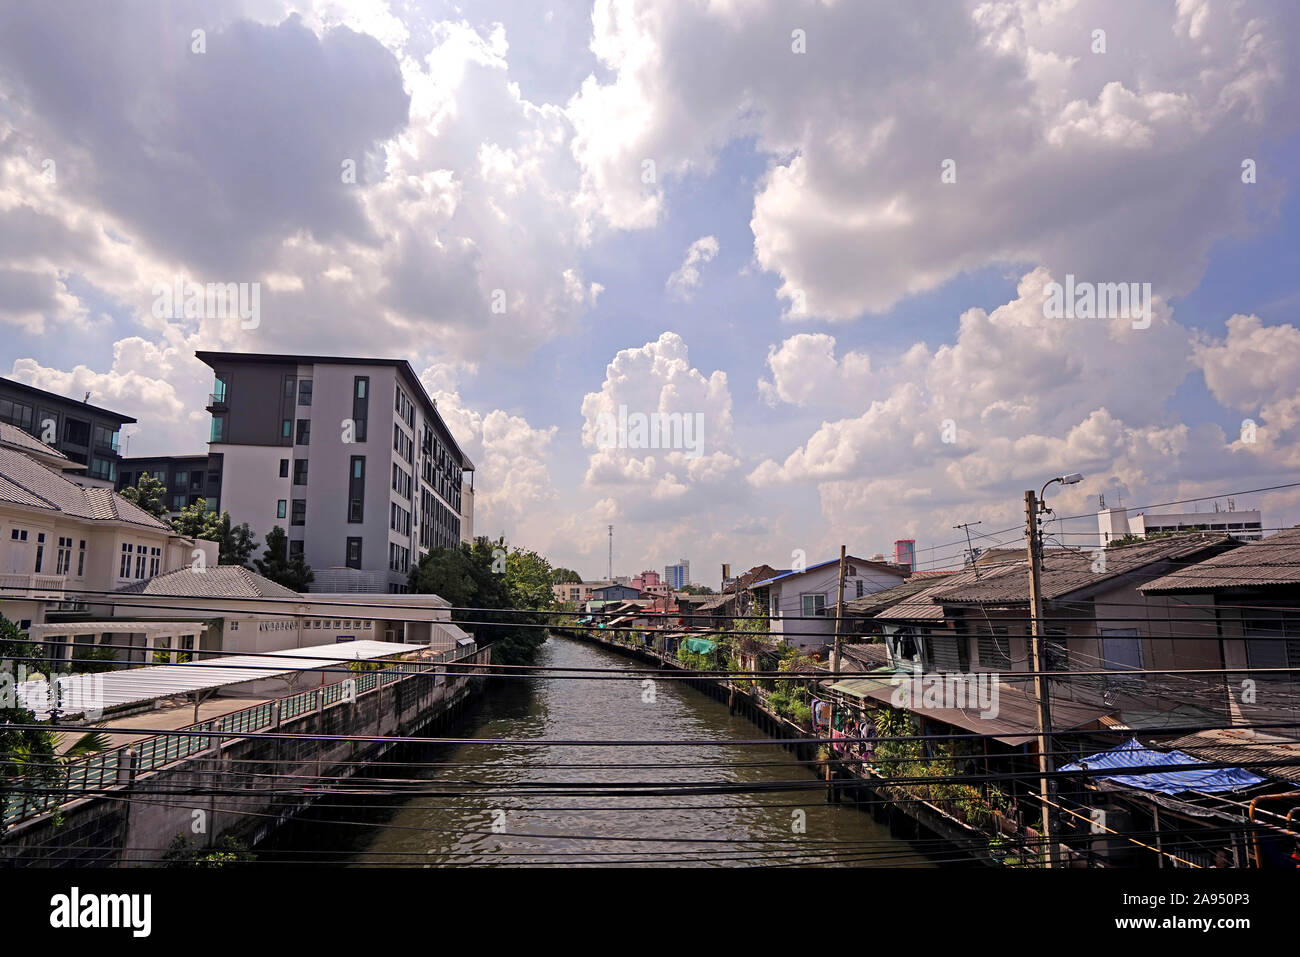 La Thaïlande appartement résidentiel, rivière, sentier et arbre dans la journée Banque D'Images